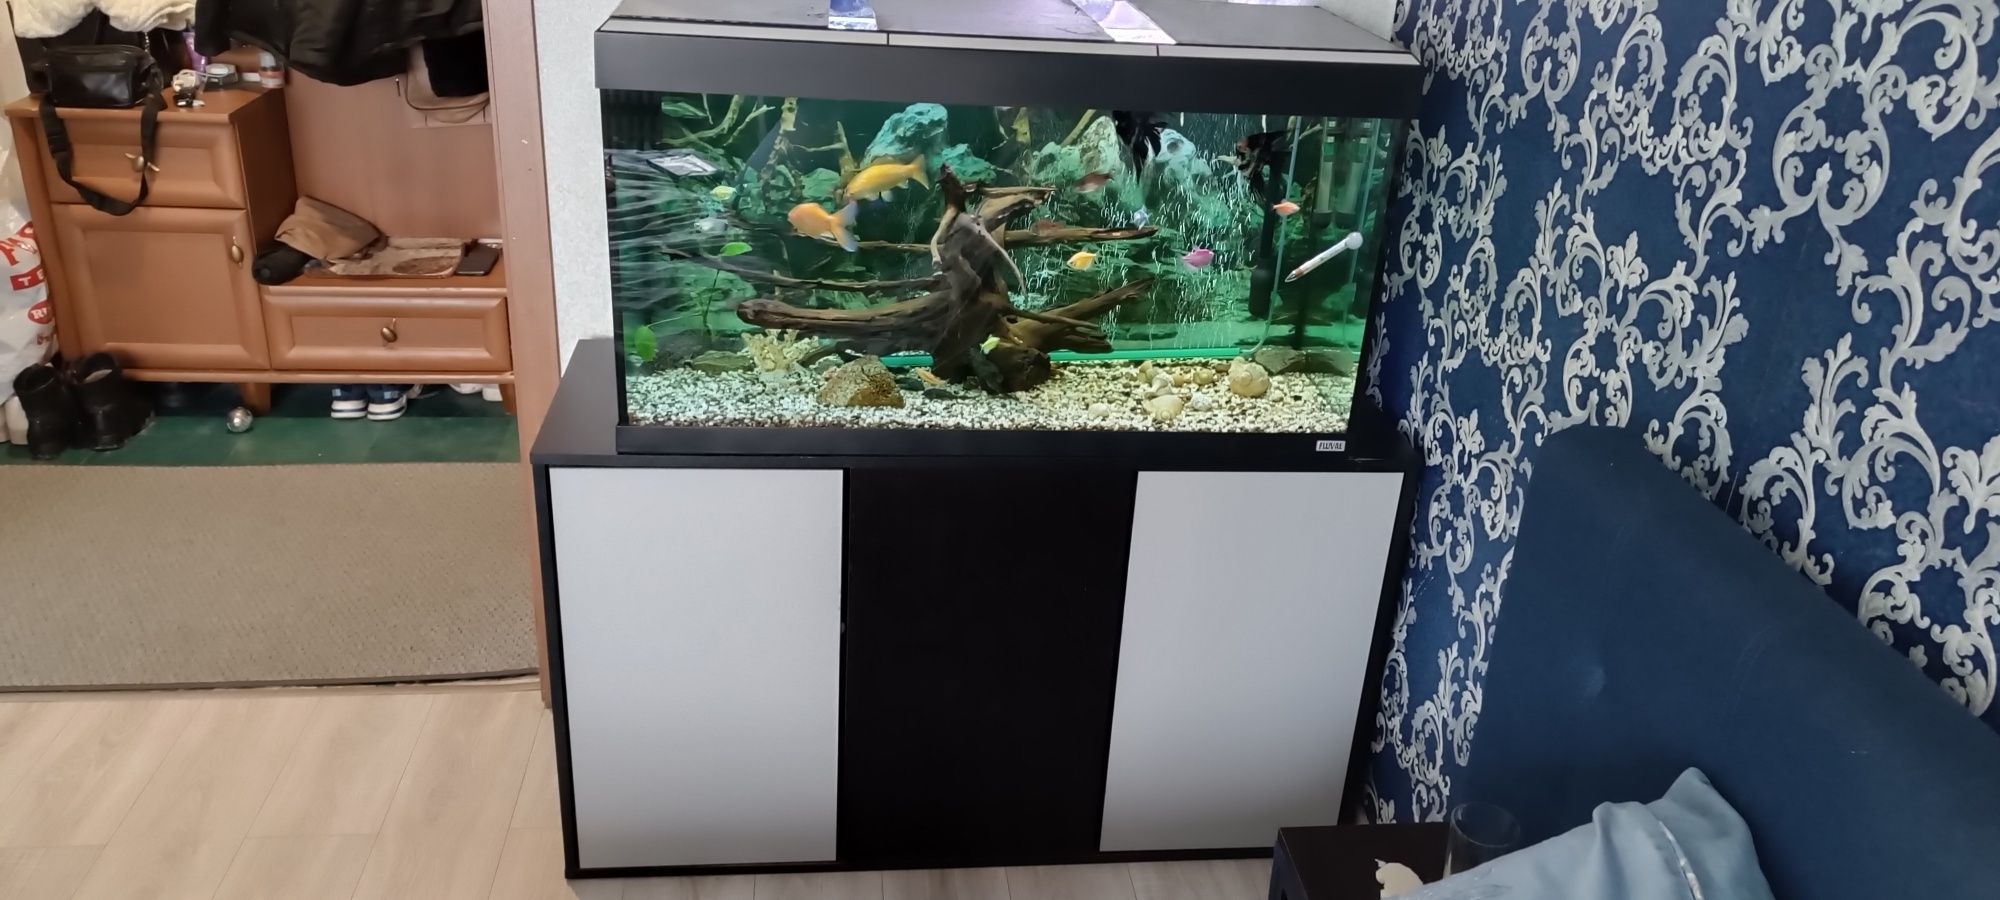 Продам фирменный аквариум в сборе с тумбой 240 литров